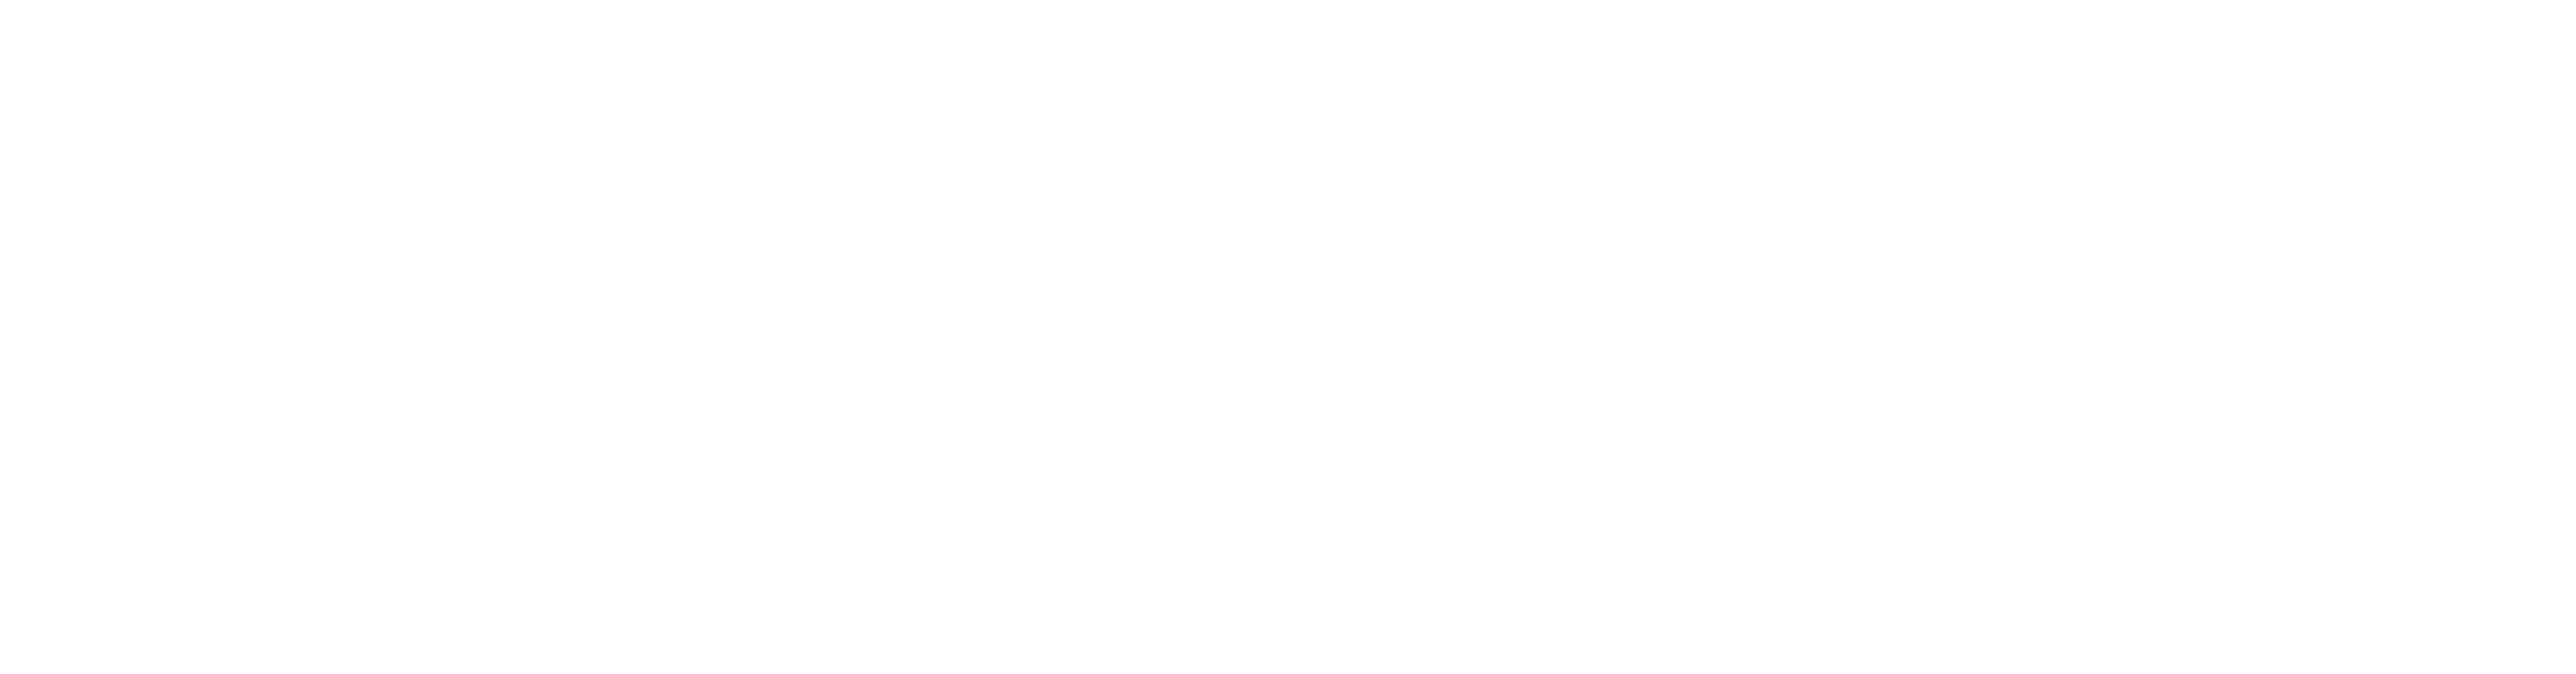 Logo Mensy